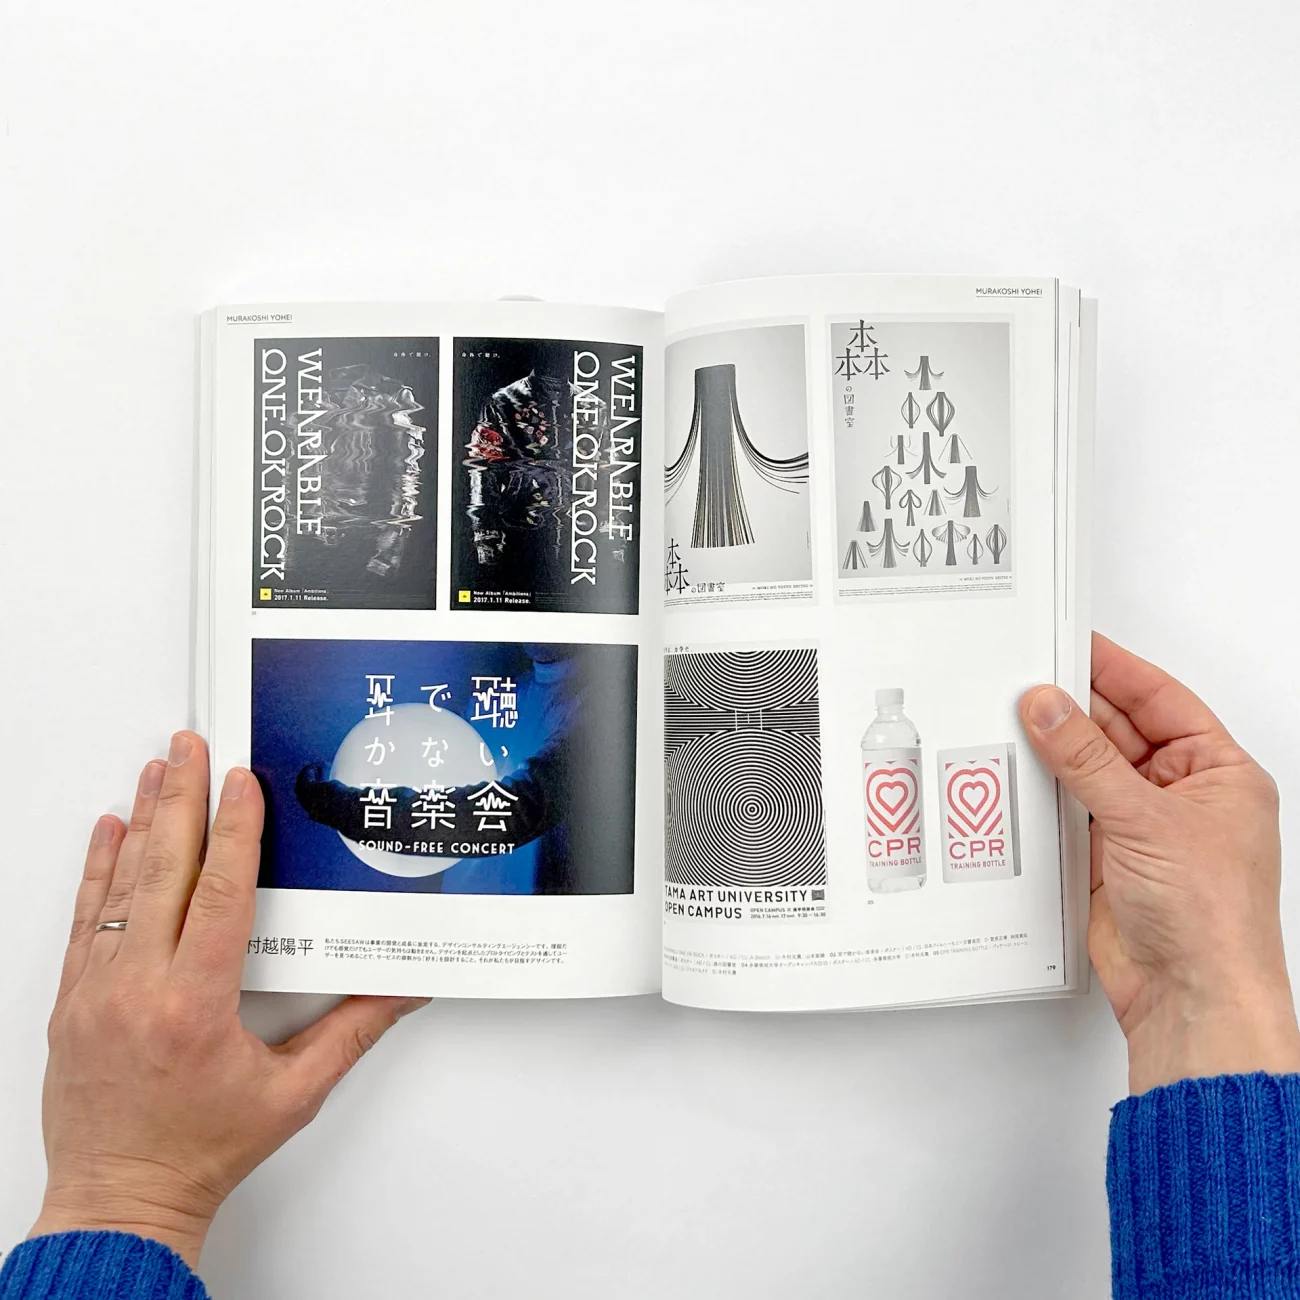 Páginas de muestra del libro de diseño New Generation Graphics.